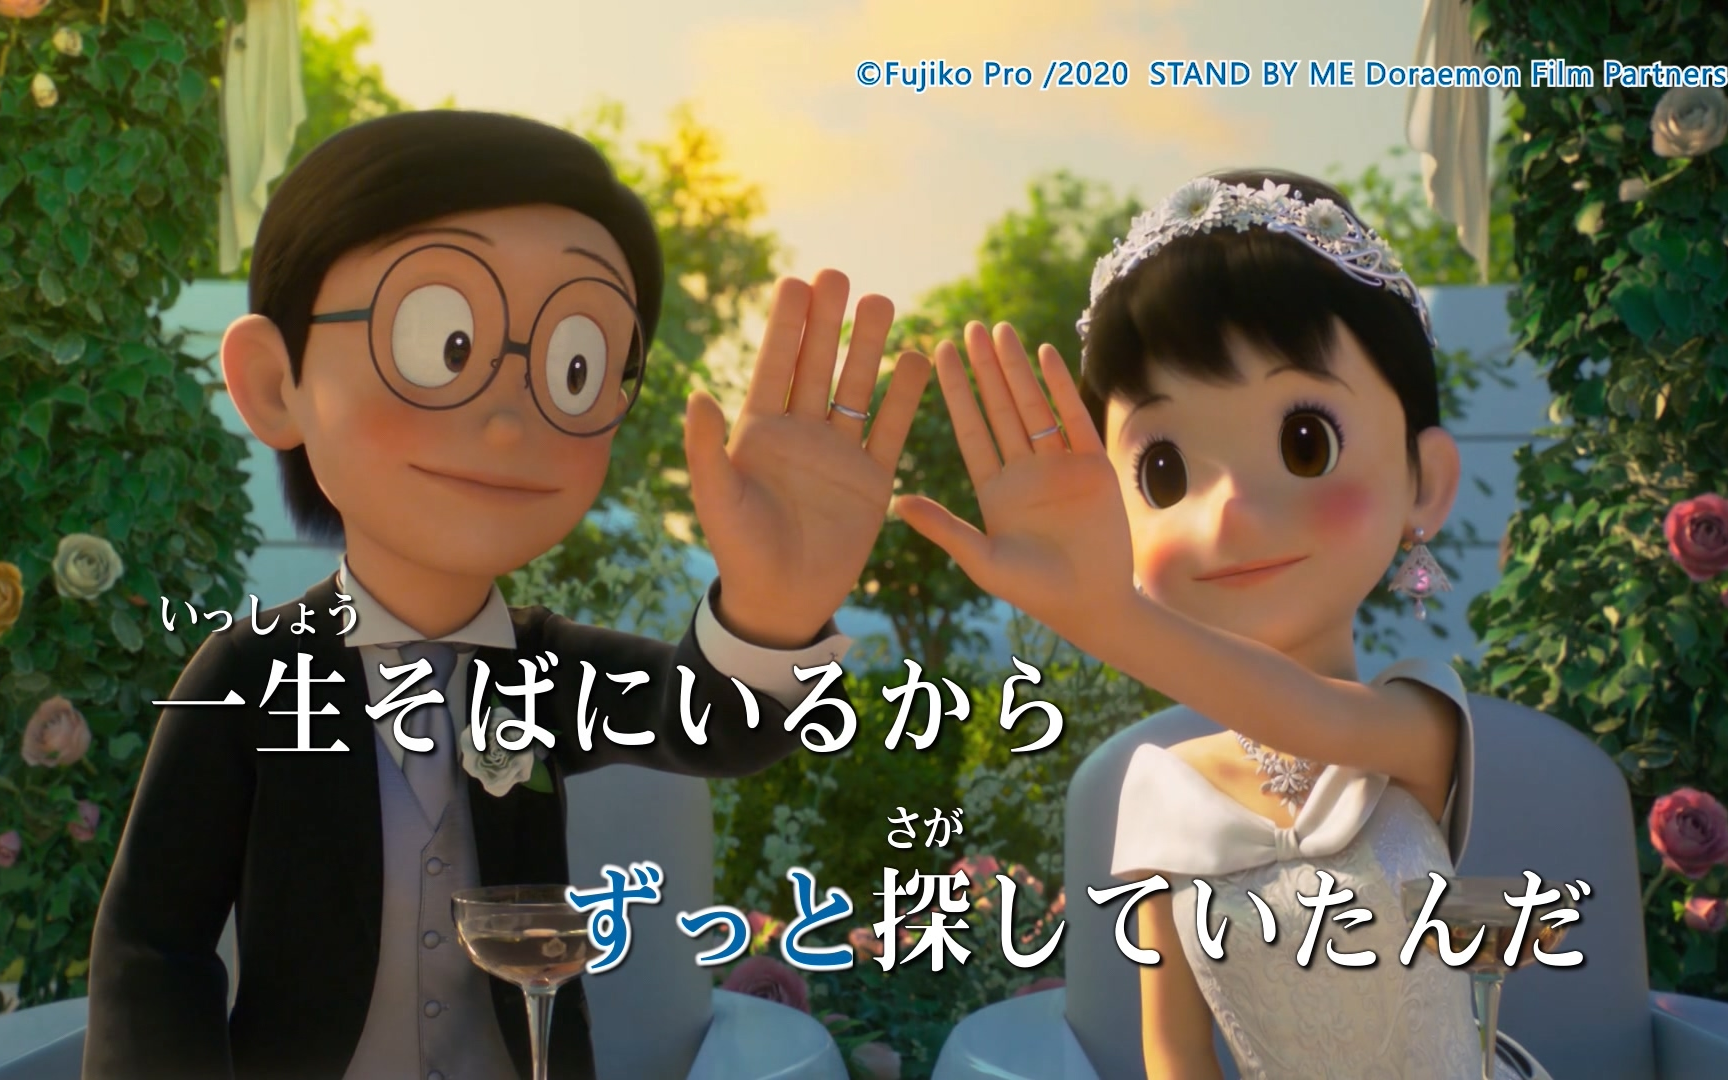 [图]【KTV版】菅田将暉 - 虹【Stand By Me Doraemon 2 主題曲】修订版